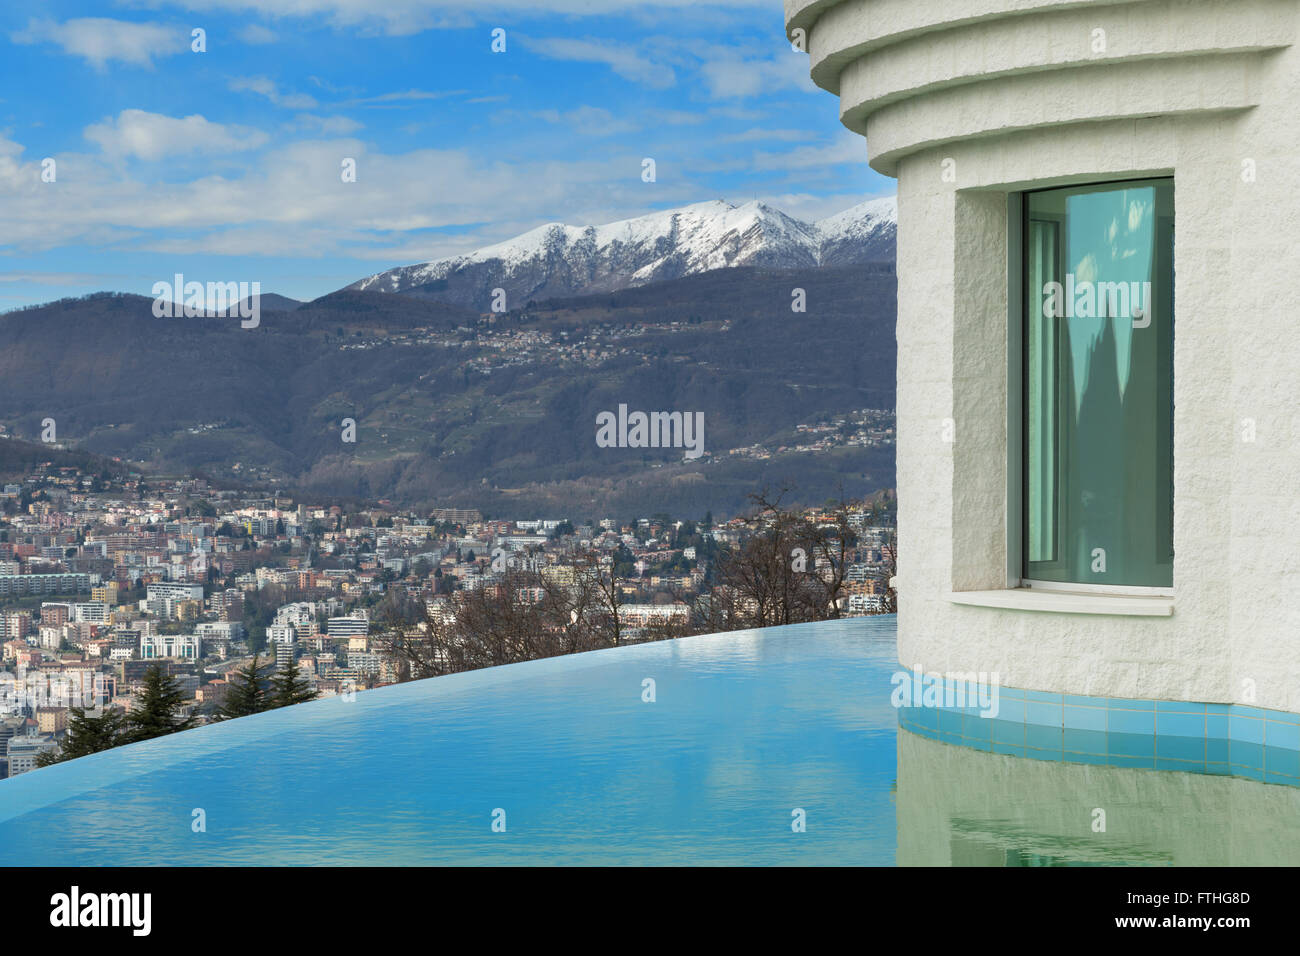 Architecture, paysage magnifique d'une maison moderne avec piscine à débordement Banque D'Images